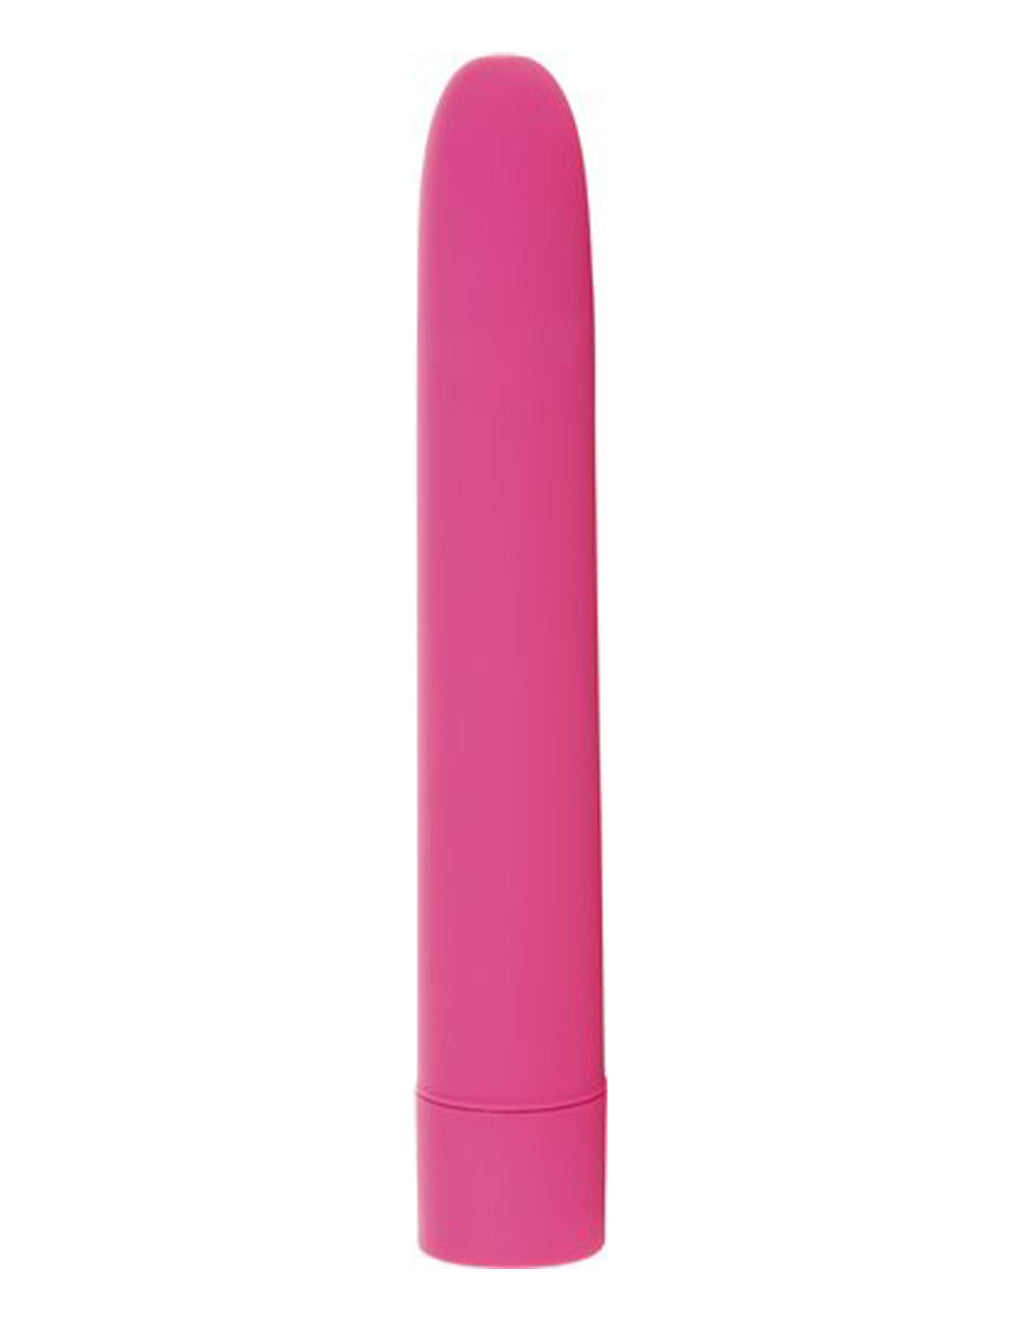 Eezy Pleezy Bullet Vibrator- Pink- Front